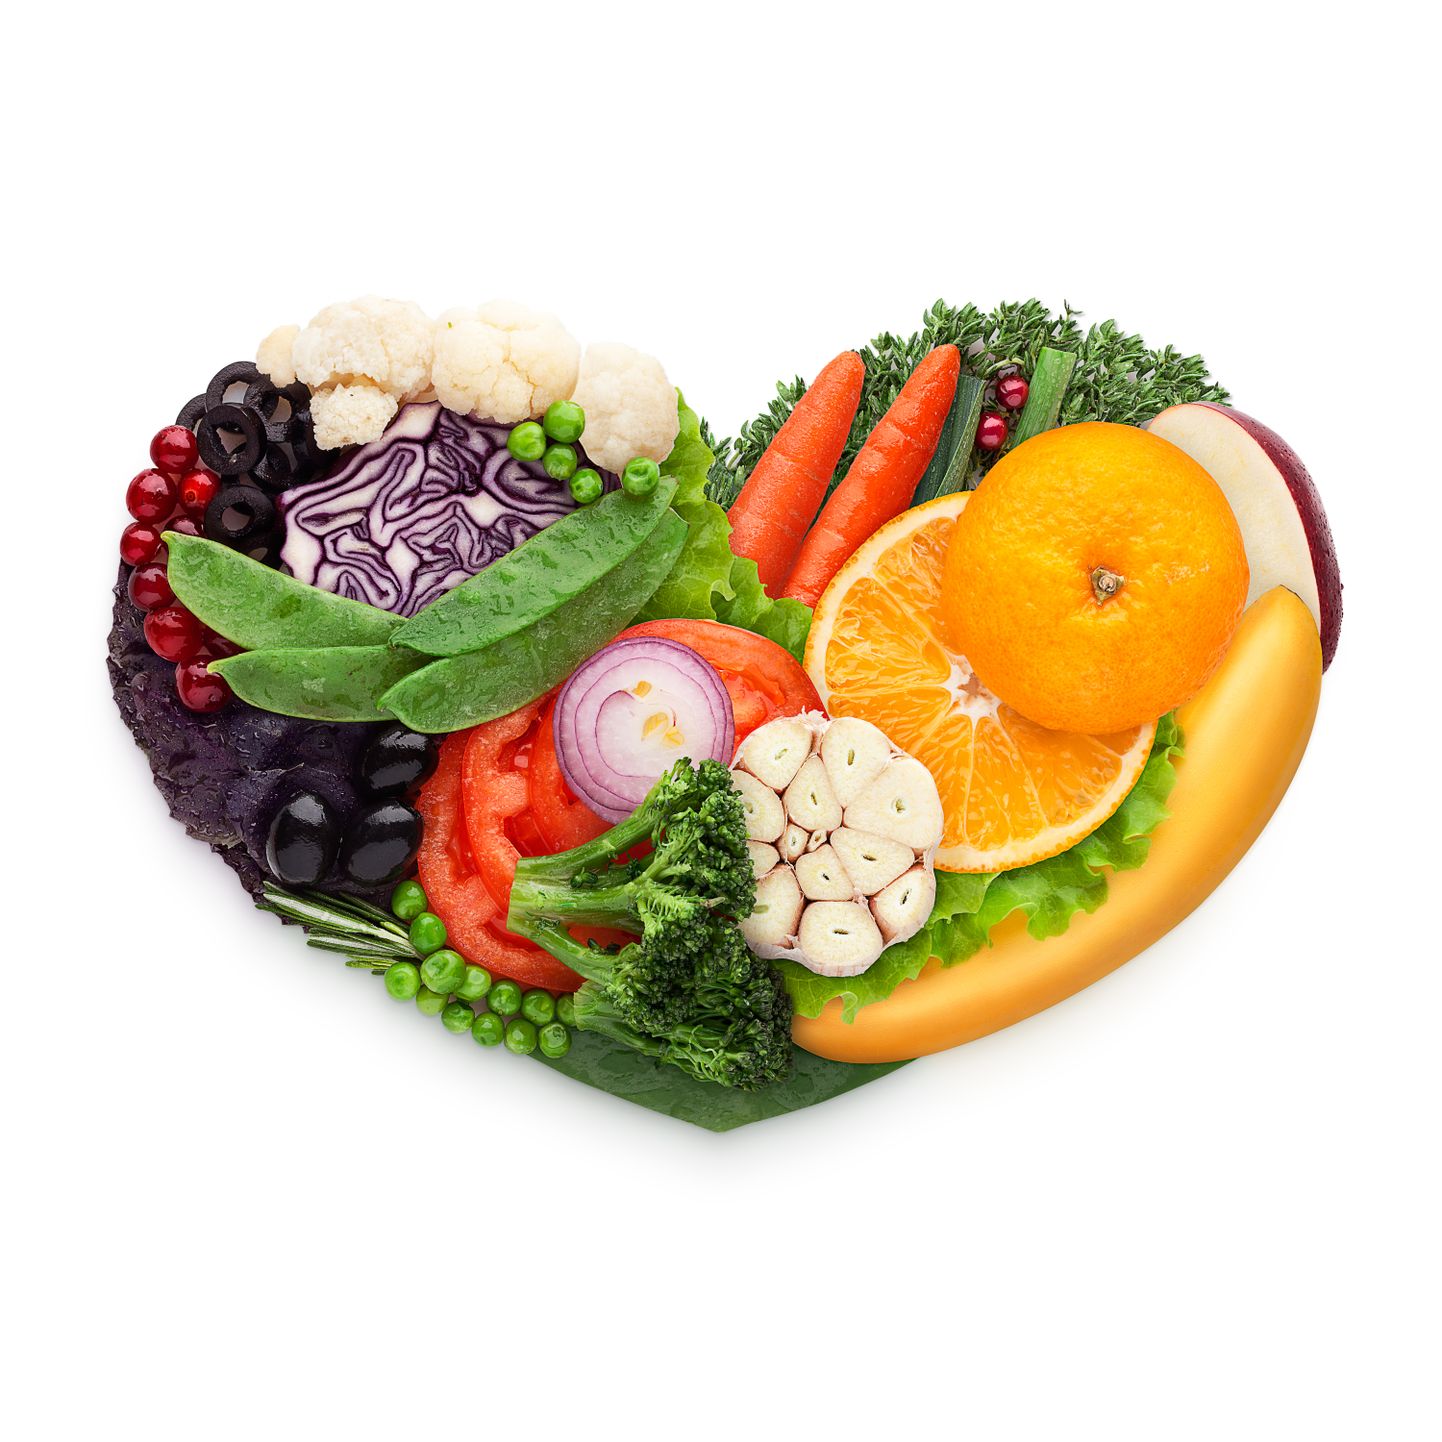 Terve südame heaks tasub süüa palju puu- ja köögivilju.